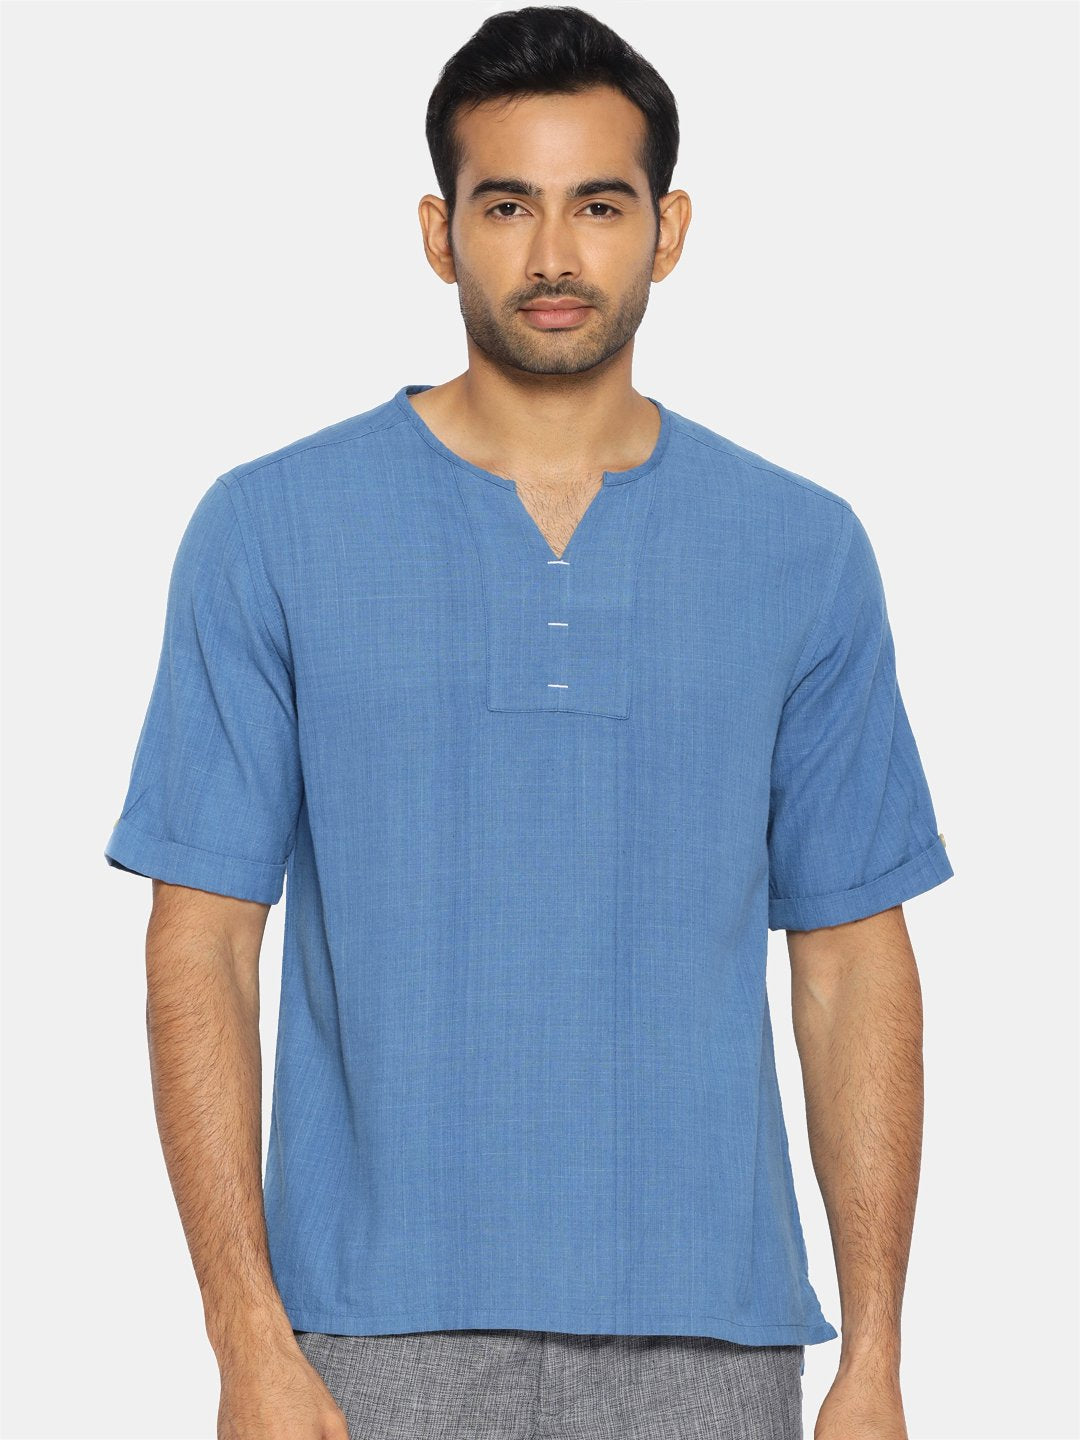 Cobalt blue round collar shirt